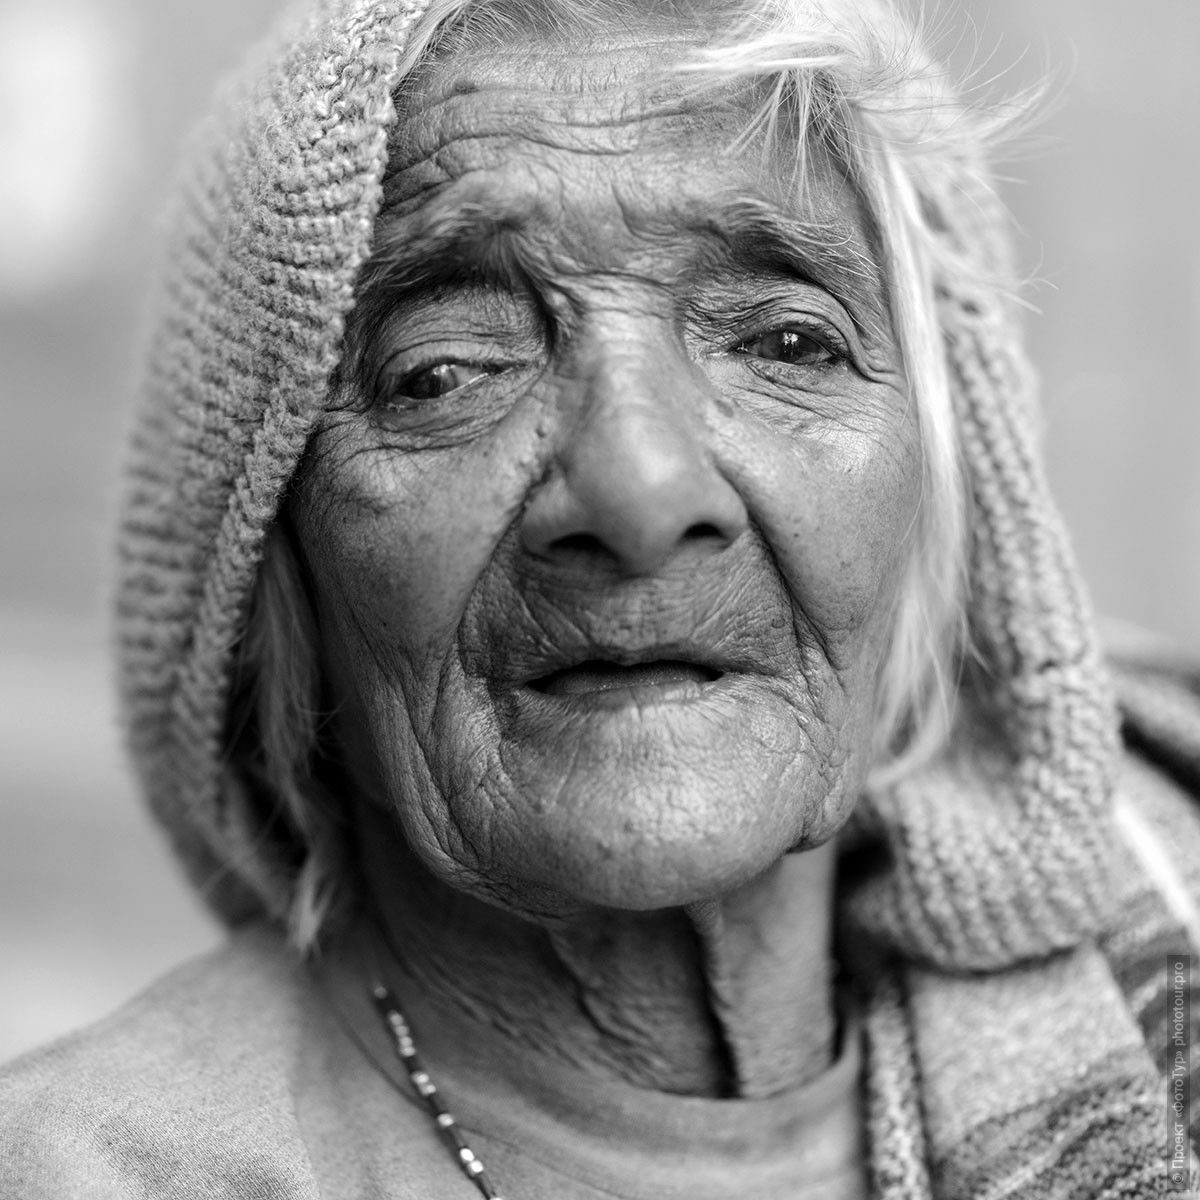 Индийская бабушка, рынок в Южном Каджурахо. Фотографии людей из Индии. Фототур на праздник Холи в Индию.